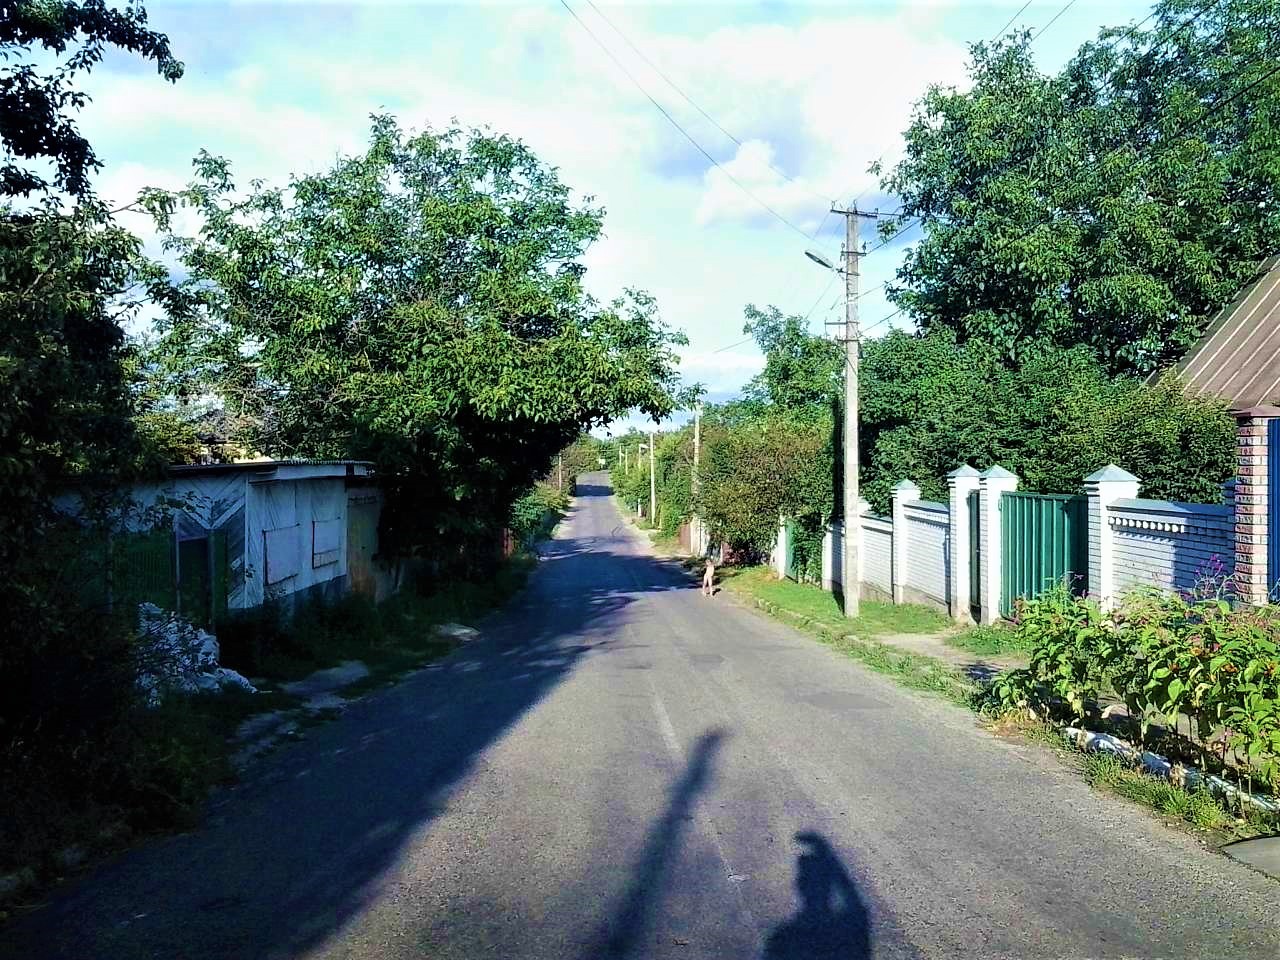 Shpytky village